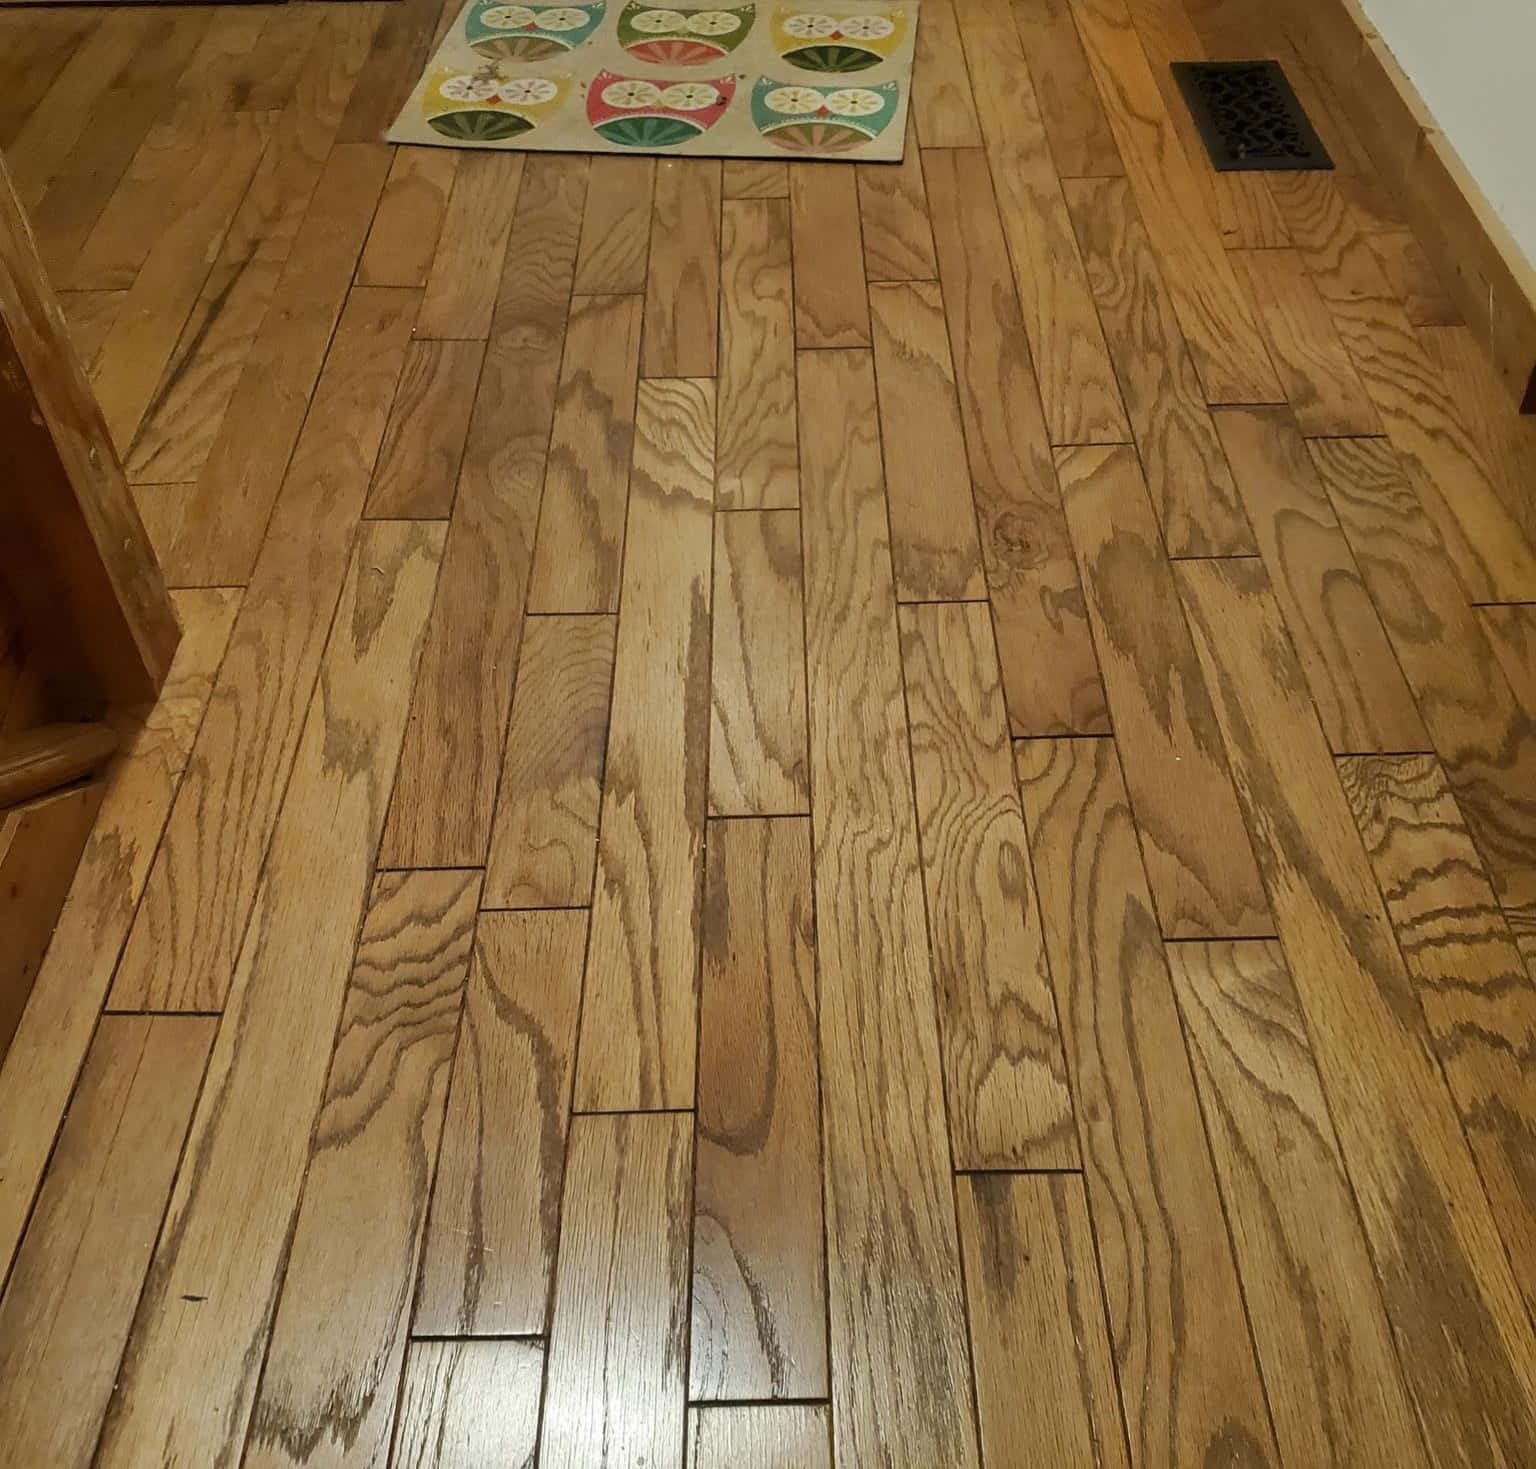 Rustic Wooden Floor